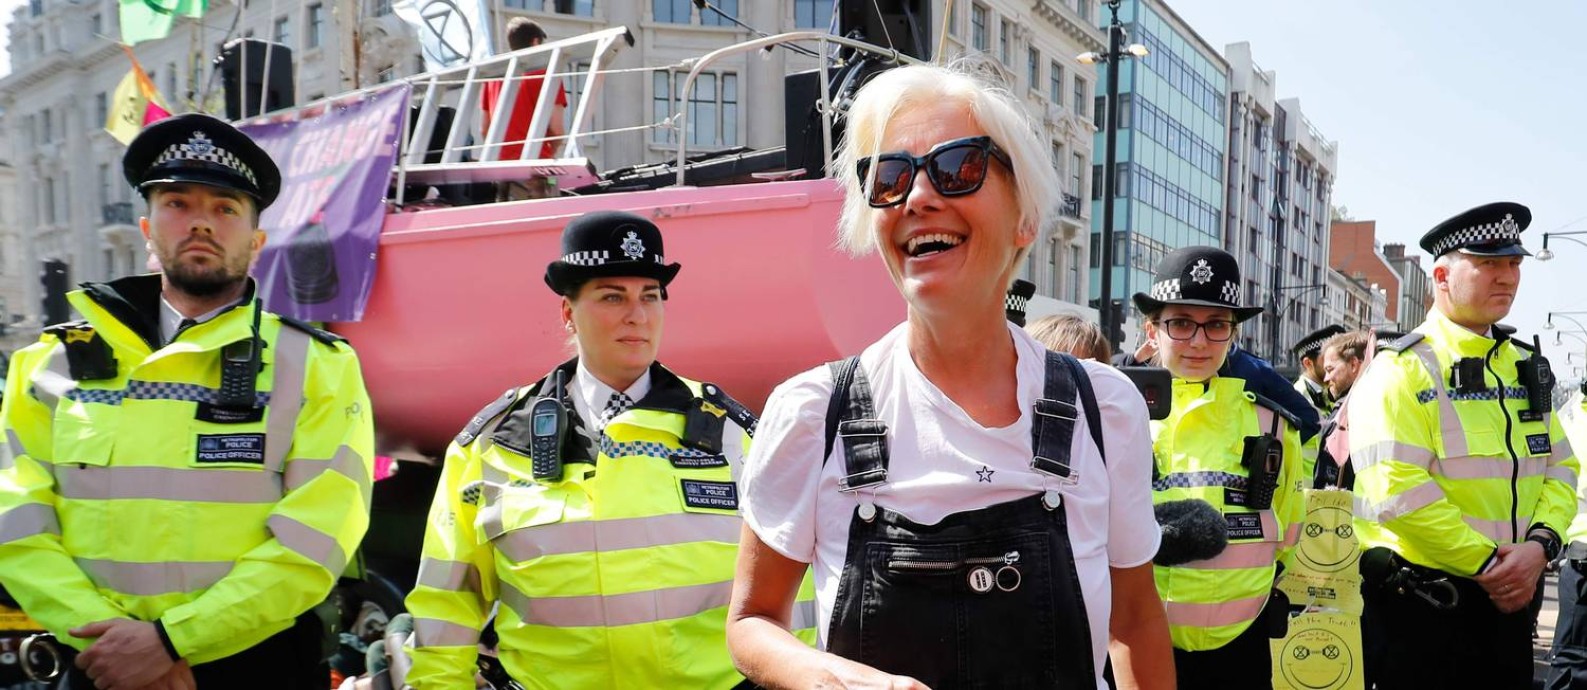 A atriz britânica Emma Thompson se juntou aos ativistas em ato contra mudanças climáticas, no centro de Londres. Esta sexta-feira marca o quinto dia de manifestações lideradas pelo grupo Extinction Rebellion, que pede ao governo britânico a declaração do estado de "emergência ecológica". Foto: TOLGA AKMEN / AFP